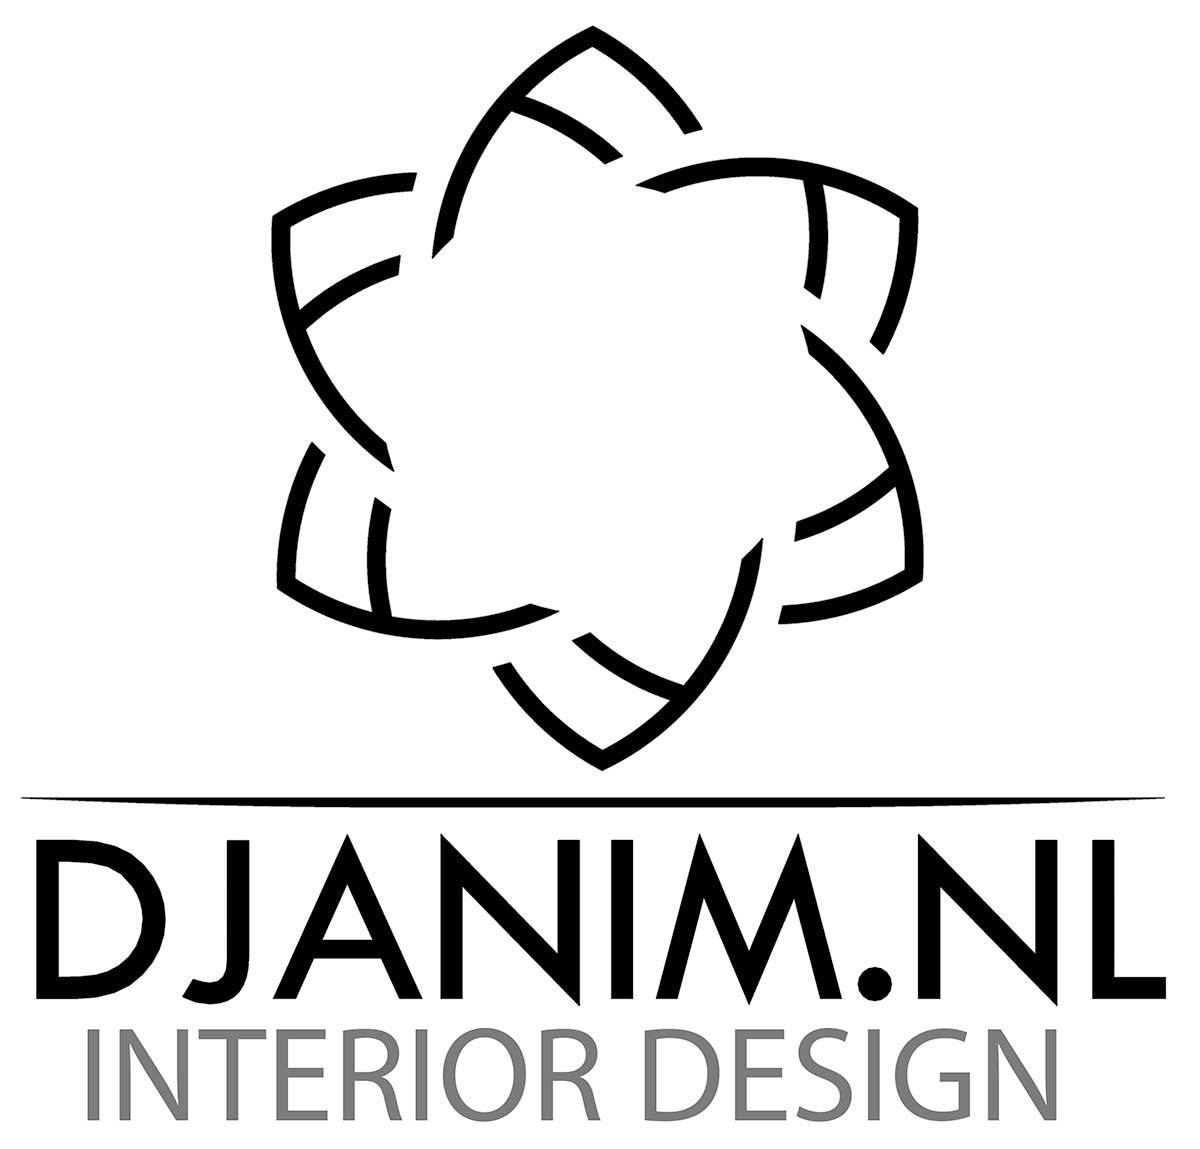 Djanim logo